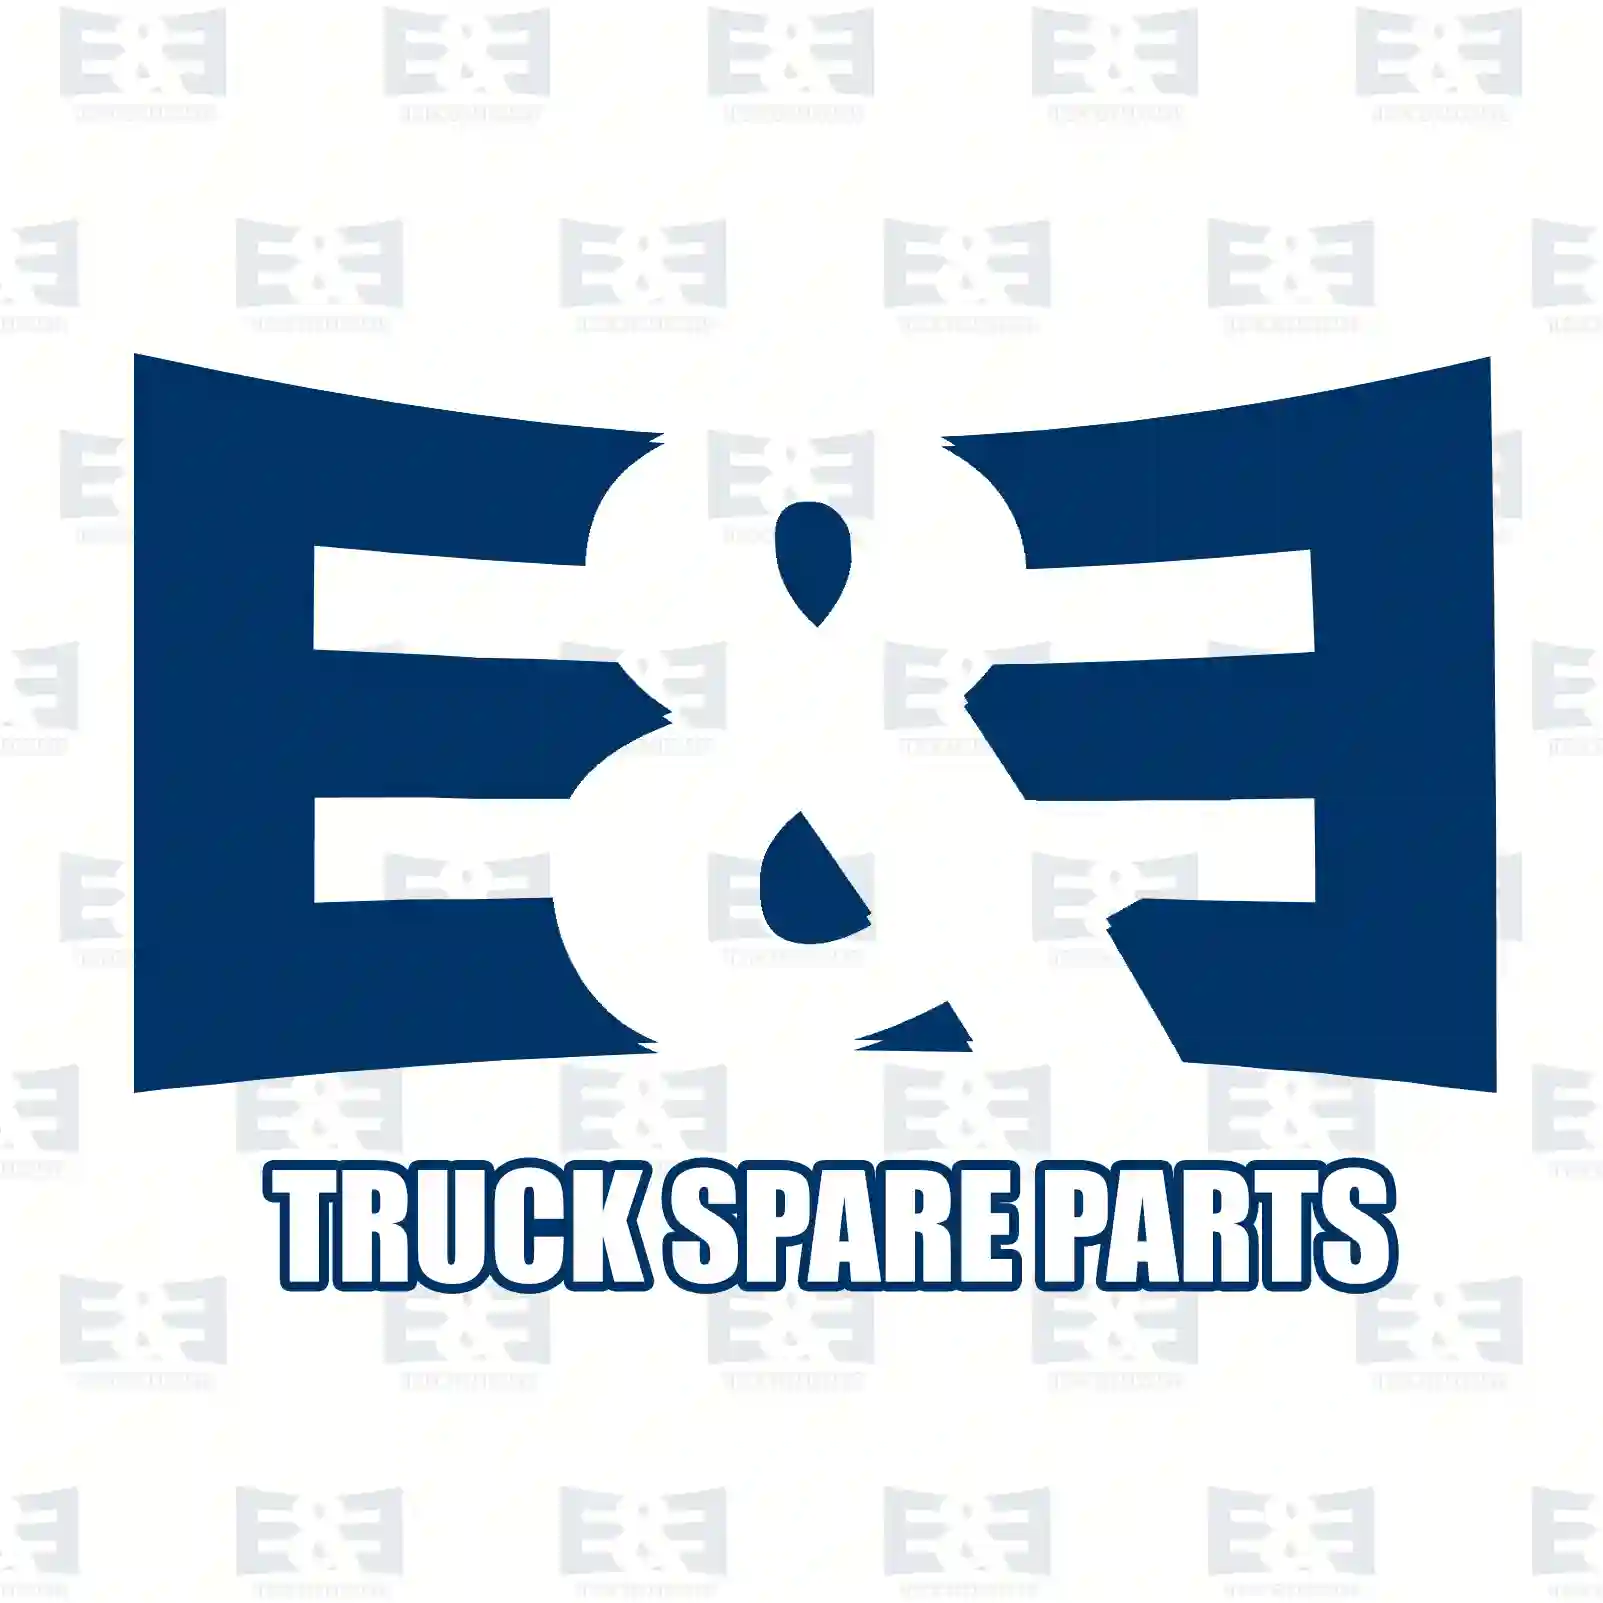 Engine hood, 2E2291446, 4070490, 4754207, YC15-16612-BD ||  2E2291446 E&E Truck Spare Parts | Truck Spare Parts, Auotomotive Spare Parts Engine hood, 2E2291446, 4070490, 4754207, YC15-16612-BD ||  2E2291446 E&E Truck Spare Parts | Truck Spare Parts, Auotomotive Spare Parts